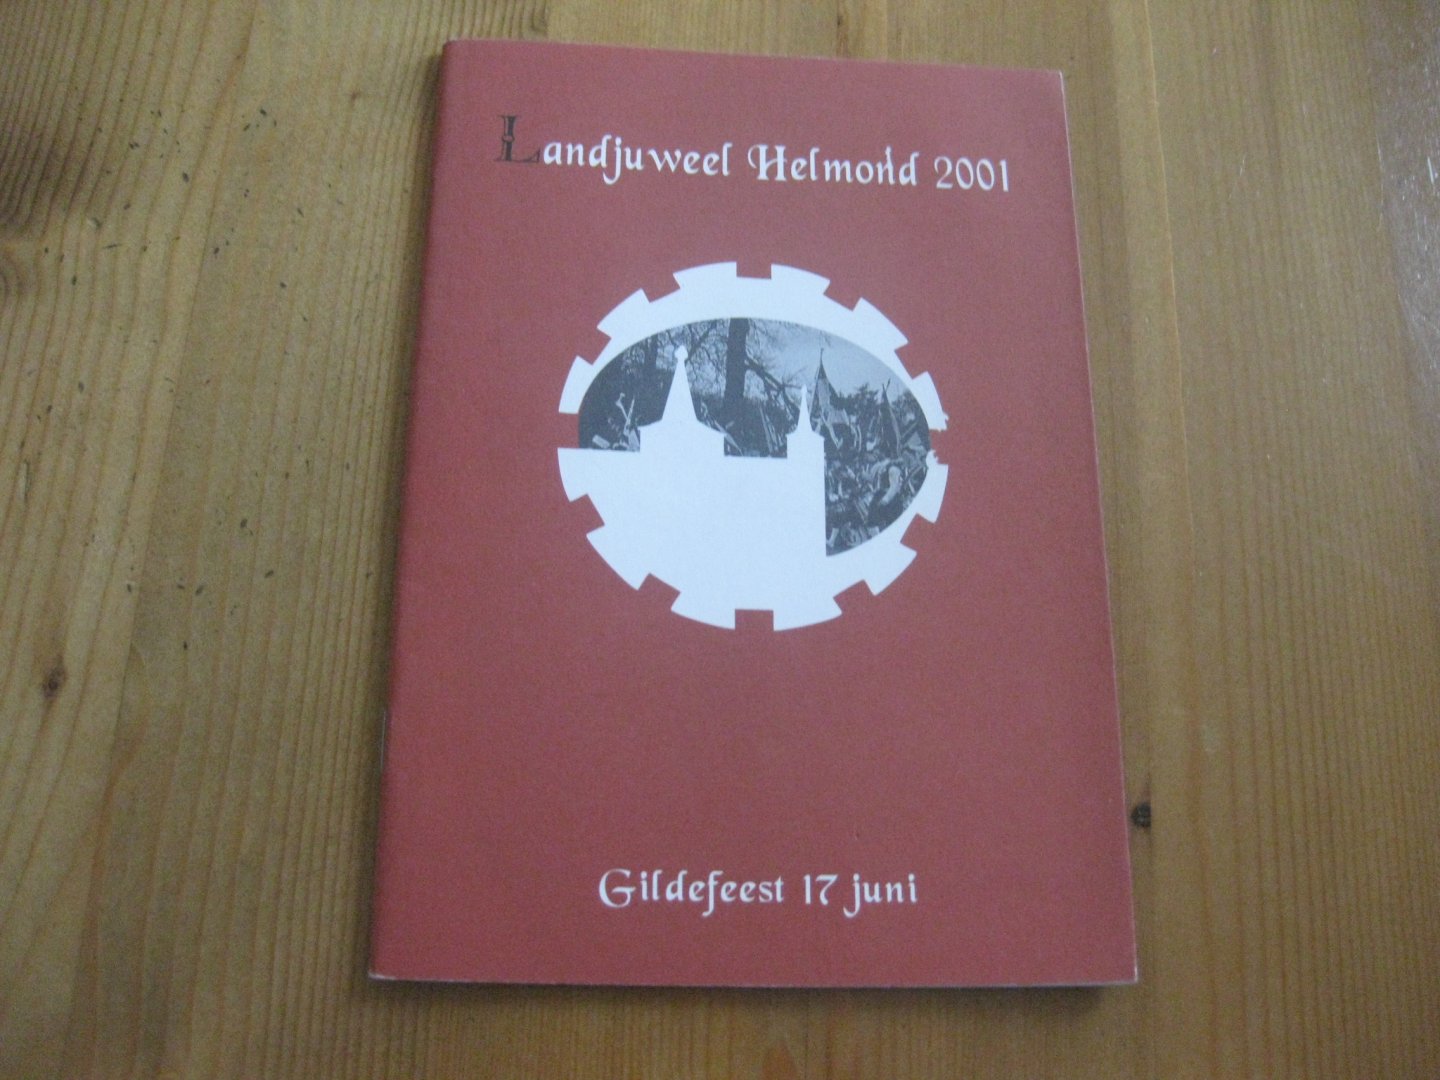 samenstellers - Landjuweel Helmond 2001  Gildefeest 17 juni  programma